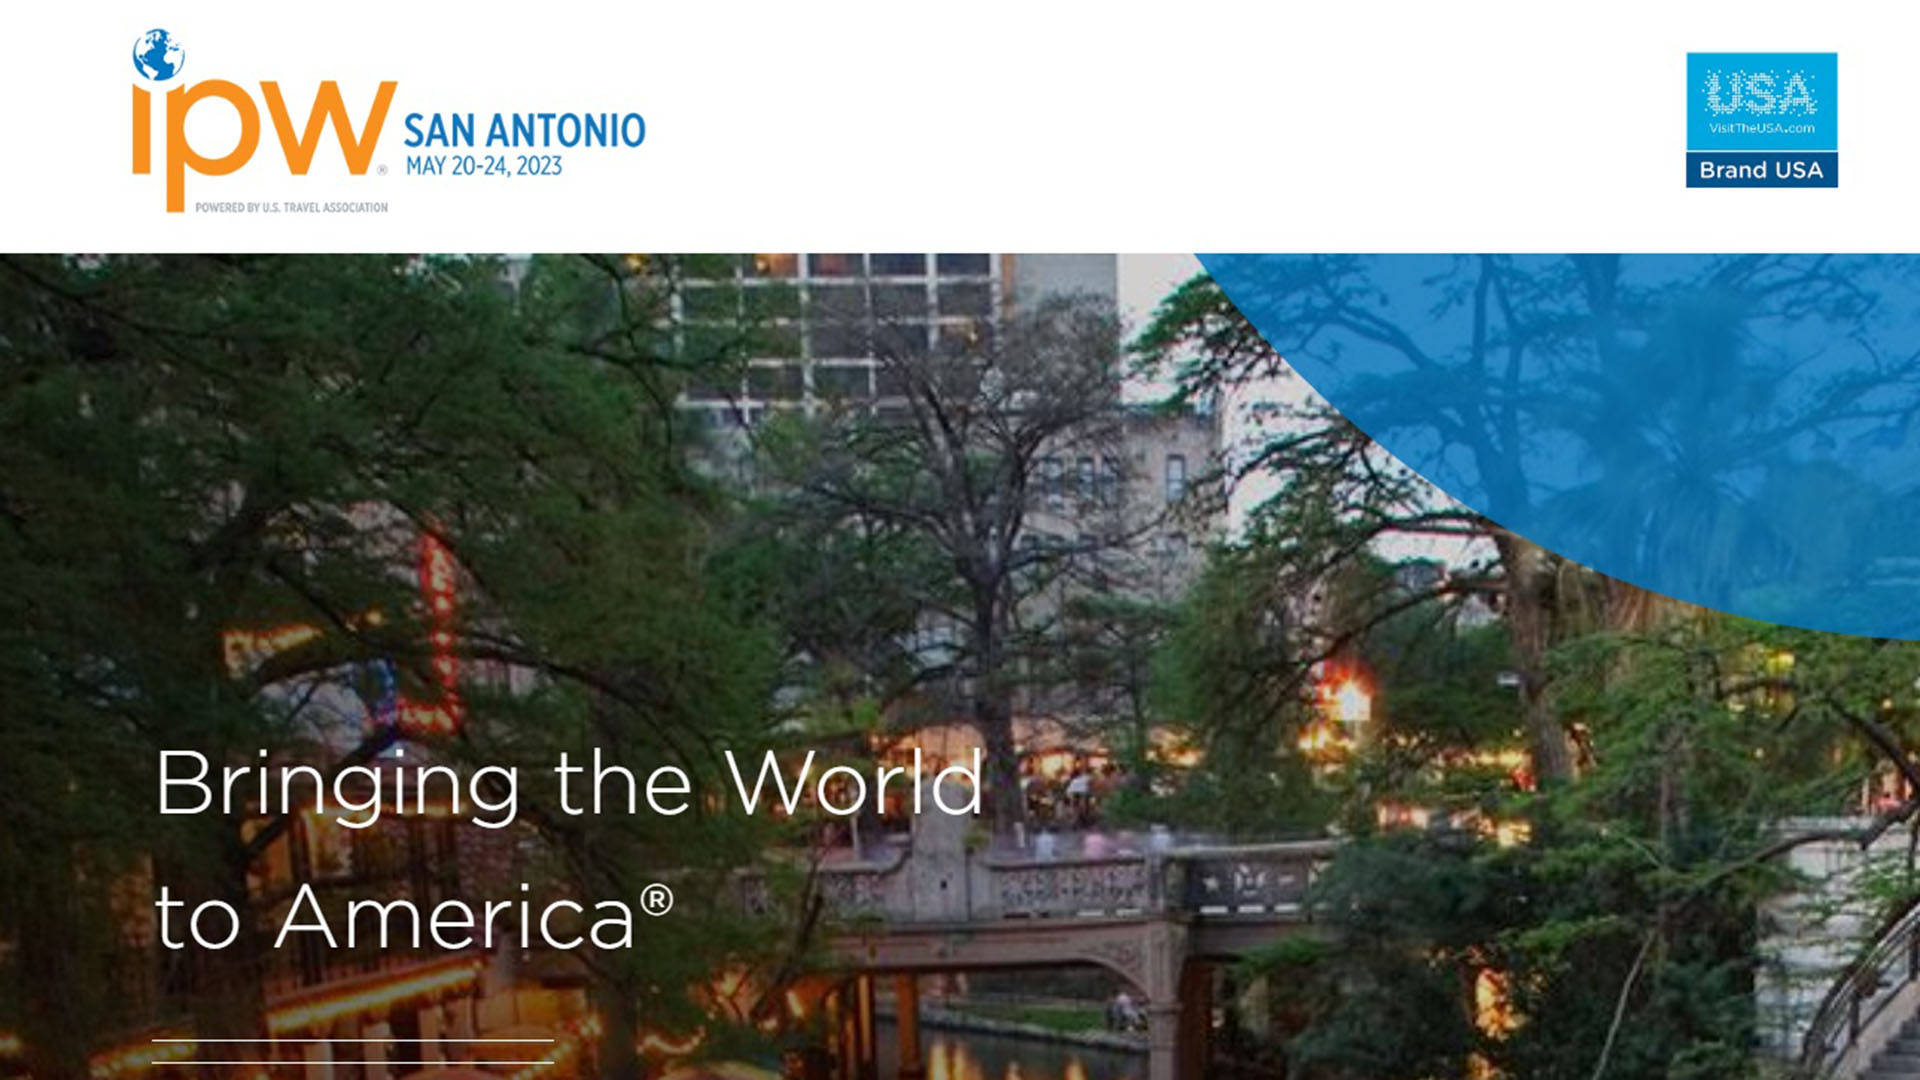 Continúan los preparativos para el IPW San Antonio 2023